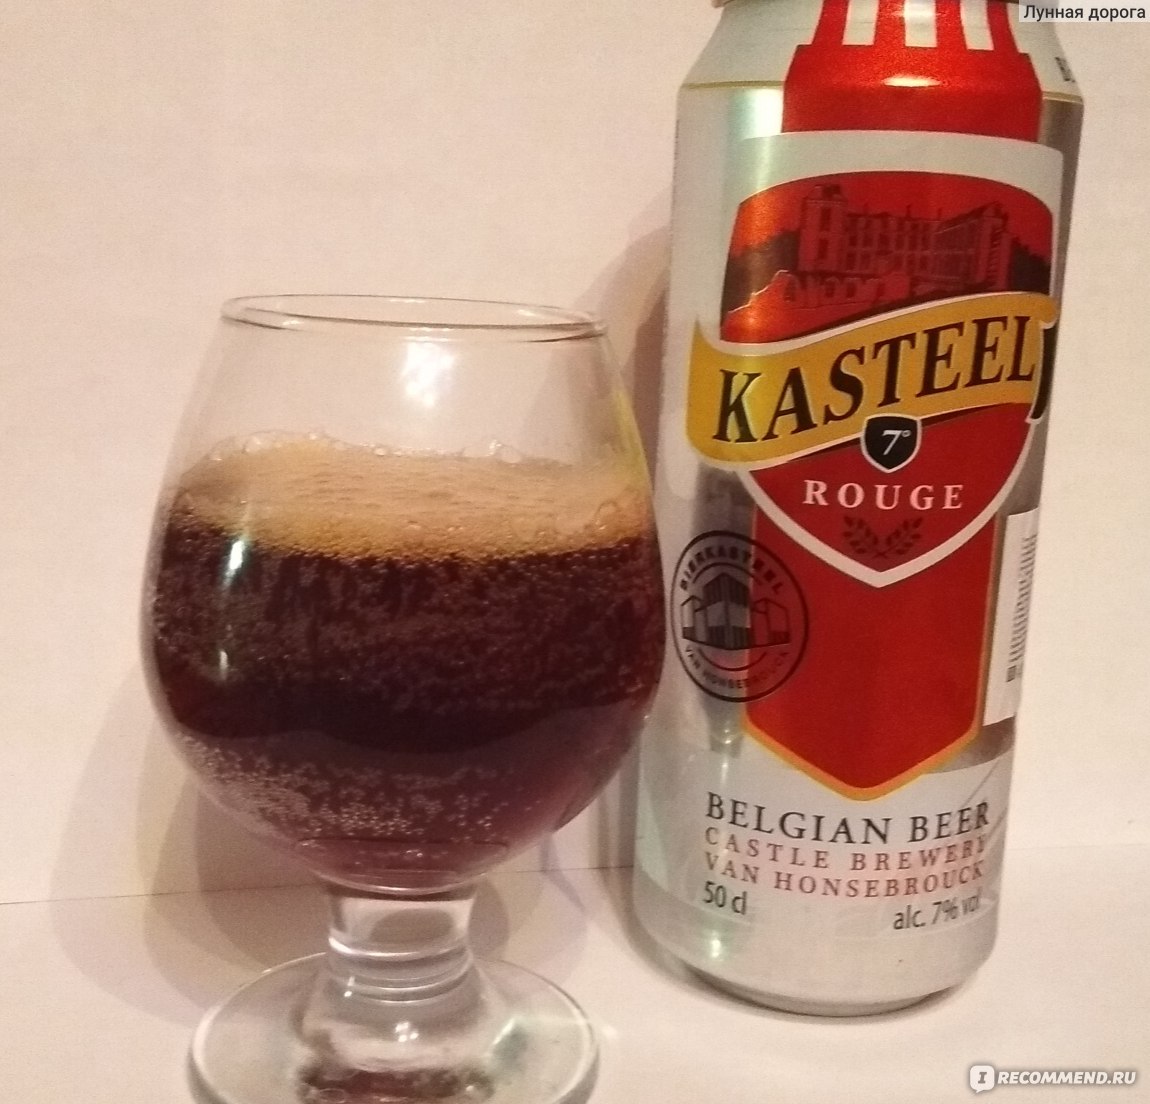 Вишневое пиво Kasteel rouge